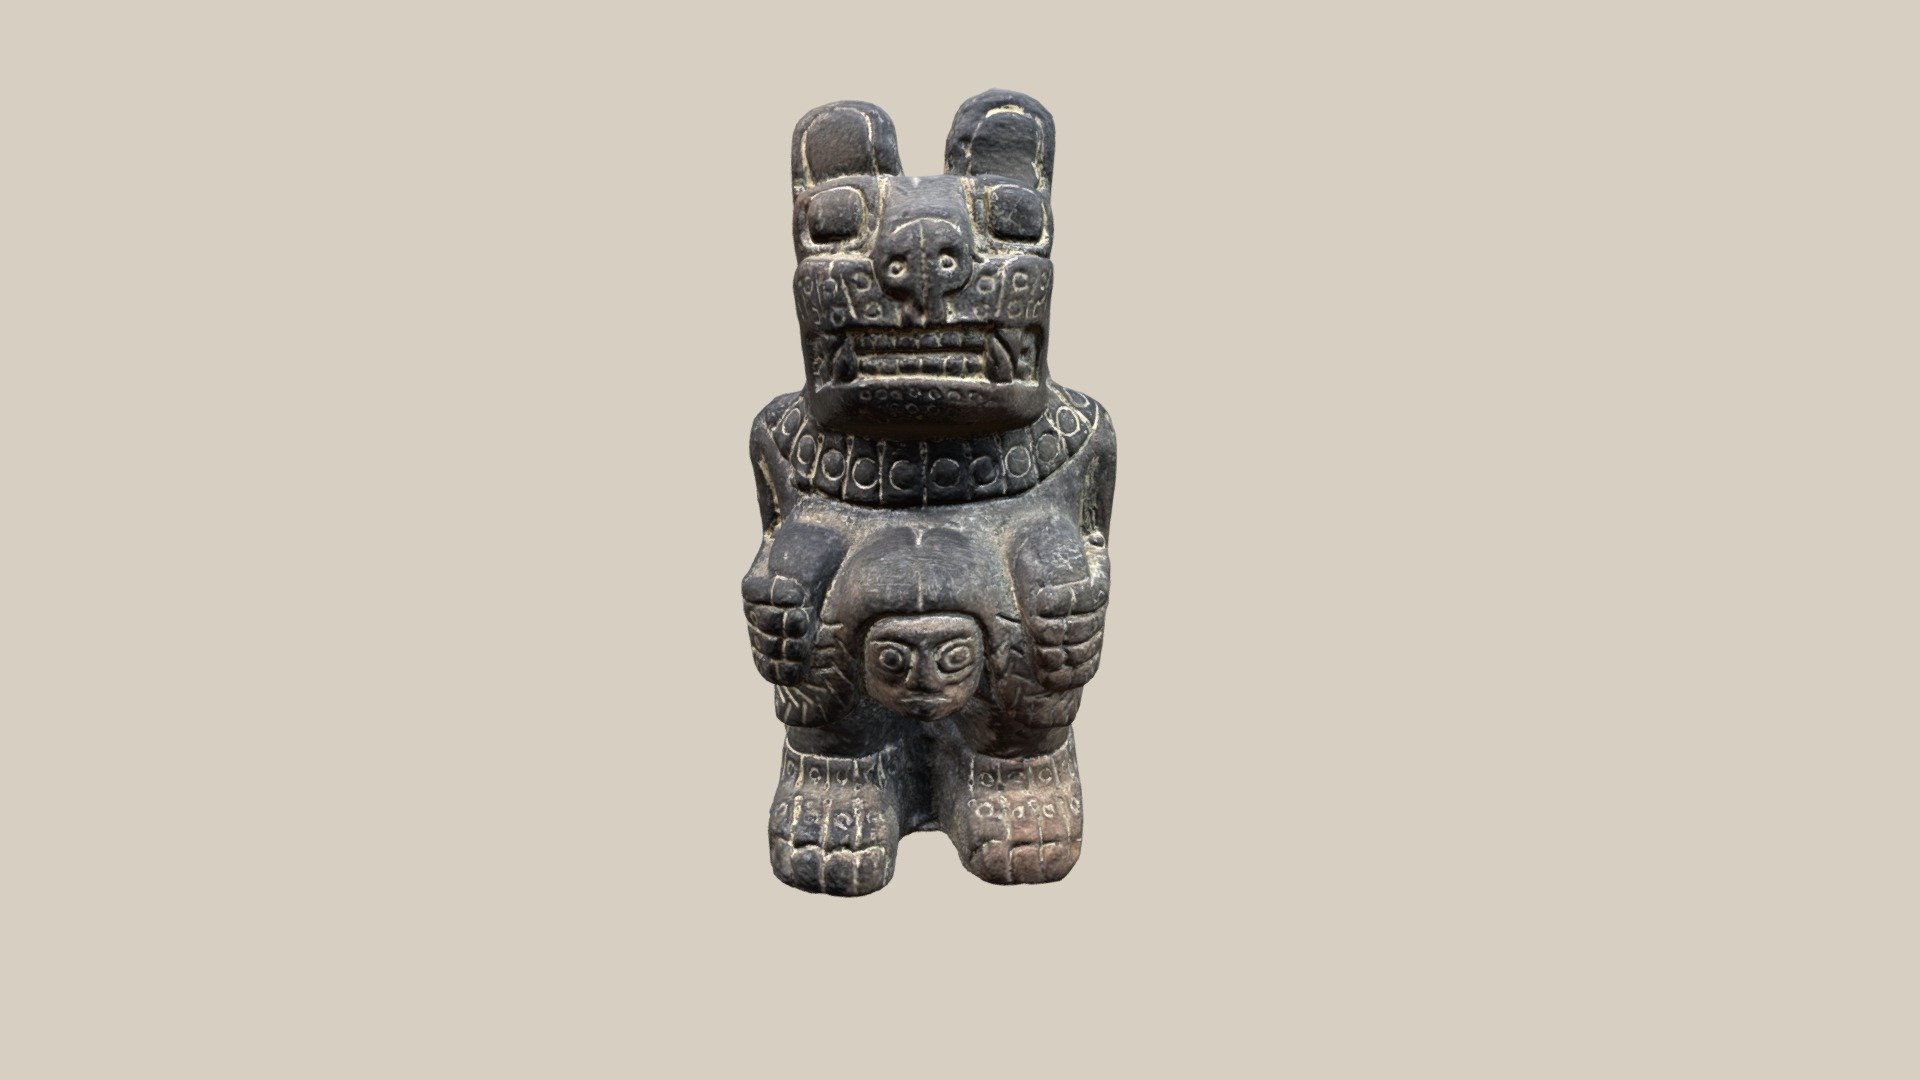 Pieza de Artesanía con diseño pre-hispánico de Tiwanaku, Bolivia
Fotogrametría

Programas usados: 
* Agisoft Metashape
* MeshMixer
* Mudbox
* Meshlab - Artesanía Tiwanaku - 3D model by ConsueloRosales (@ConsulRosales) 3d model